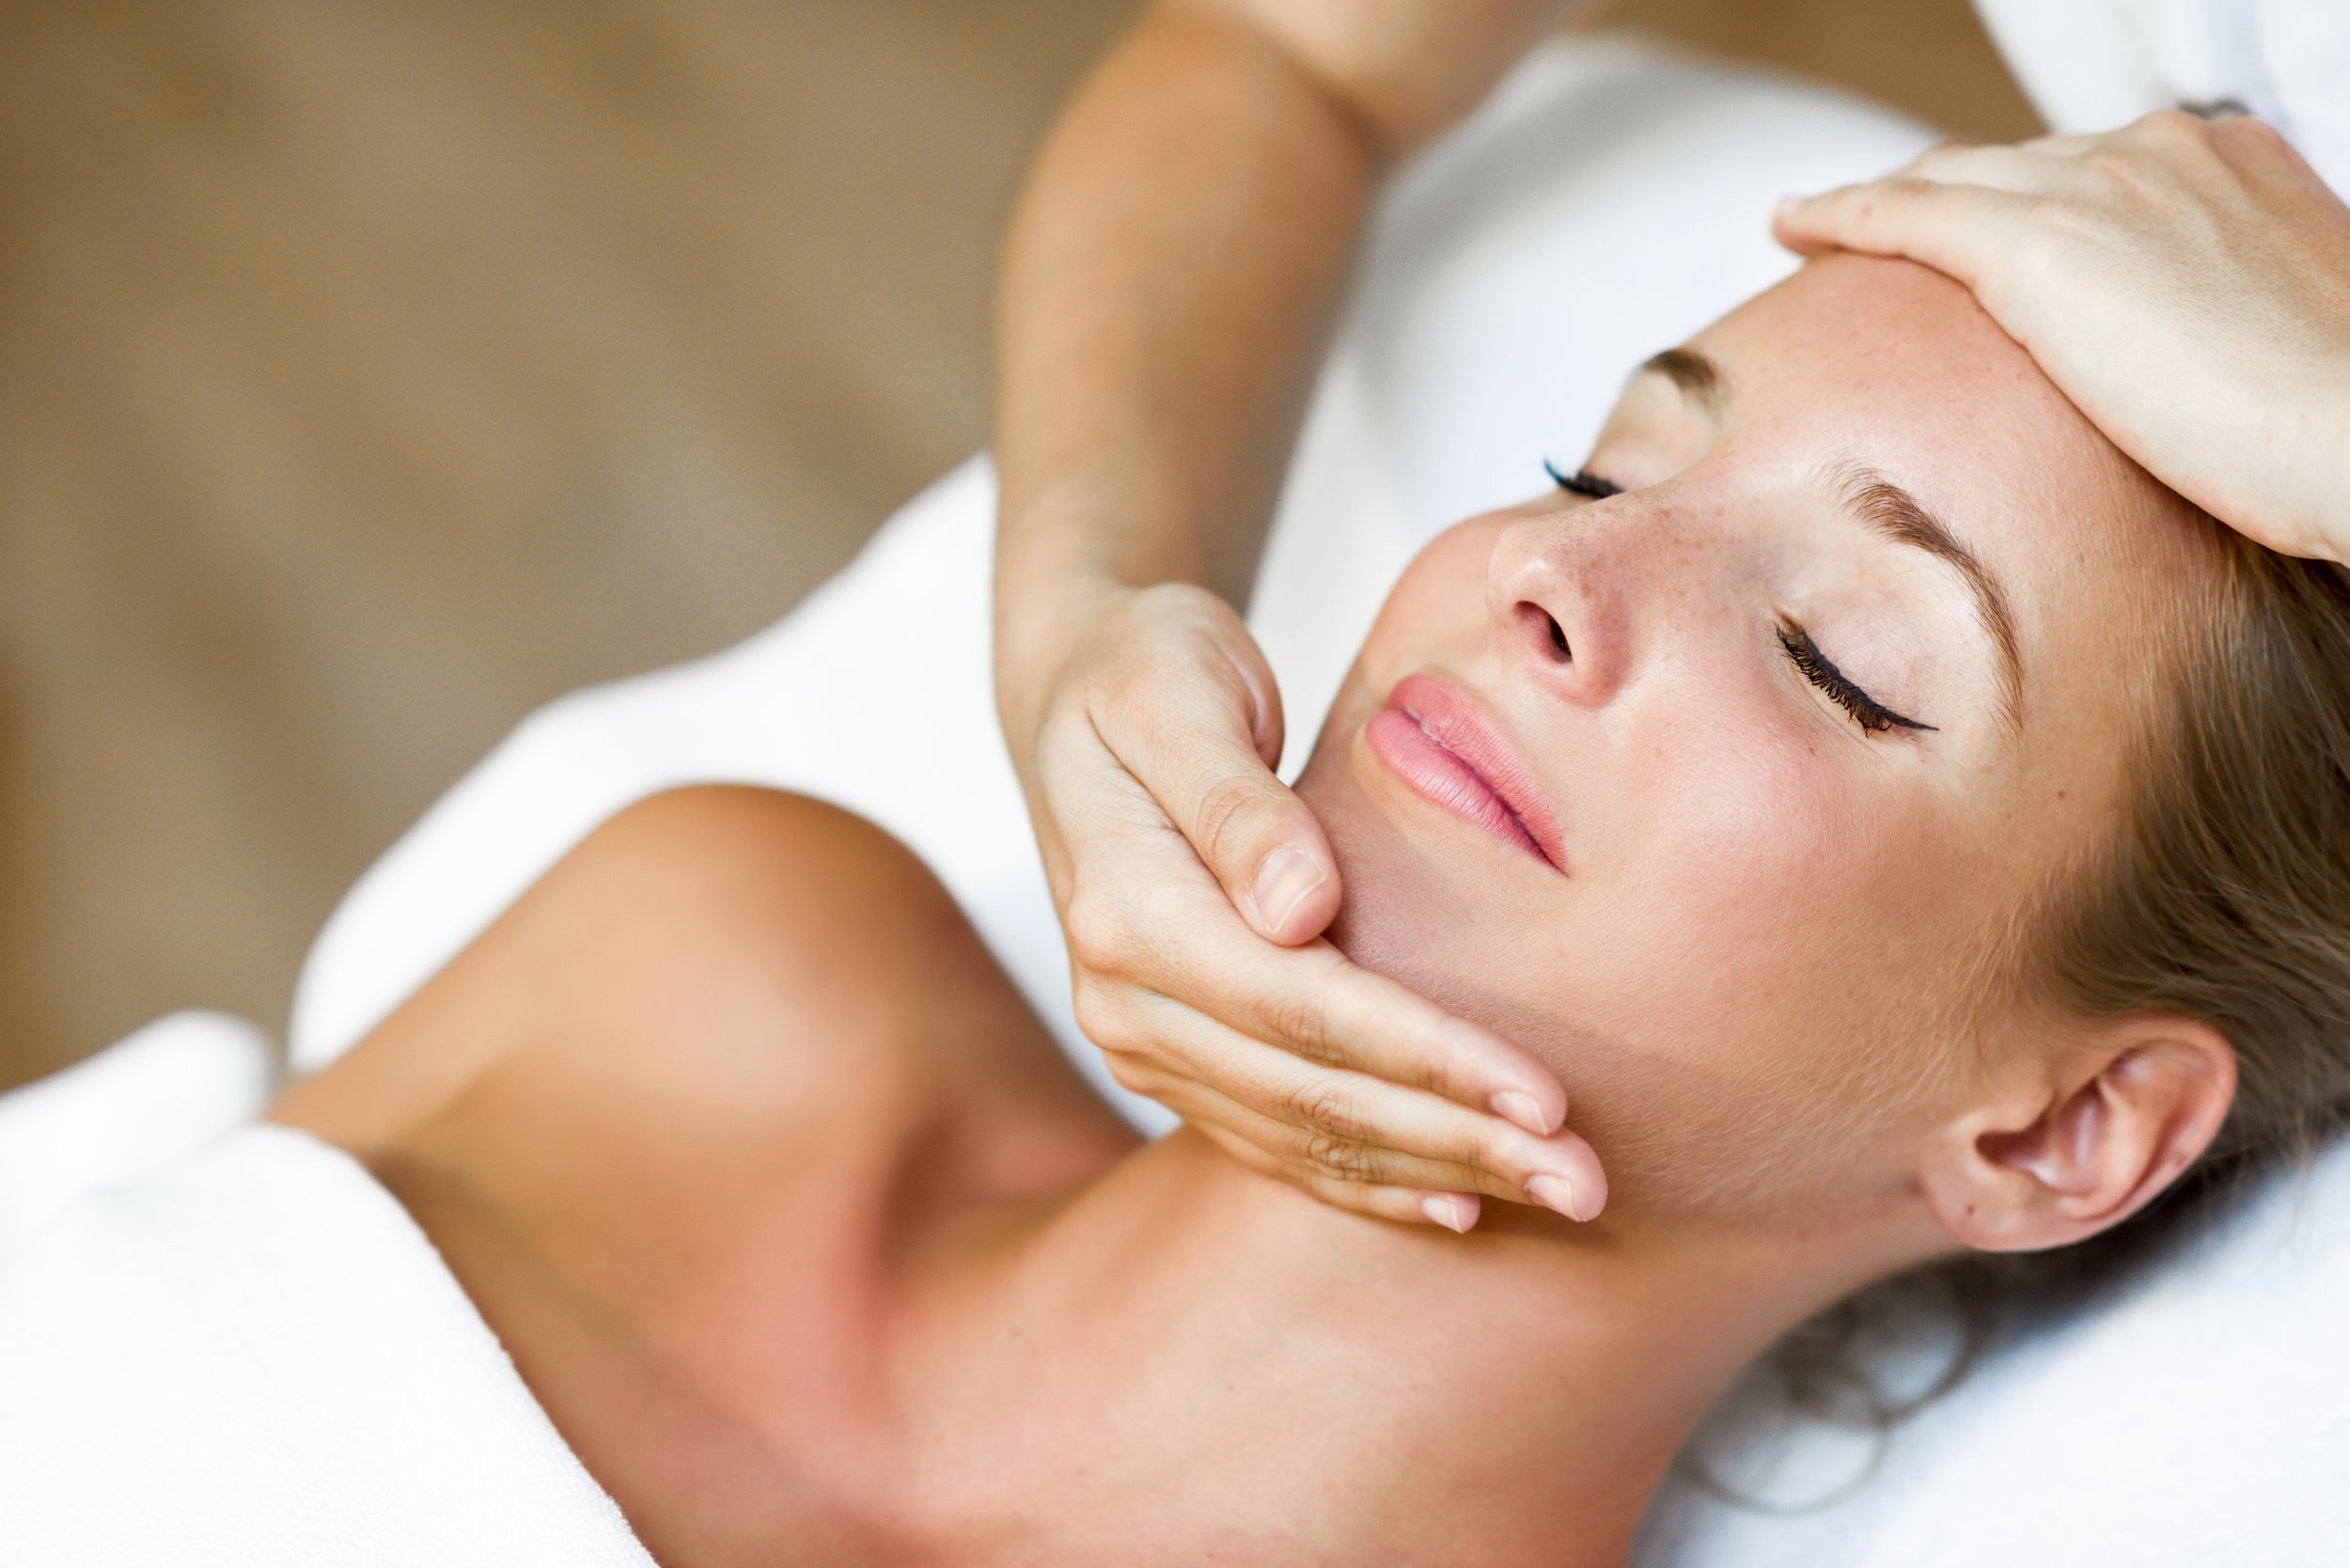 Dreamin Head Massage Therapy Unit